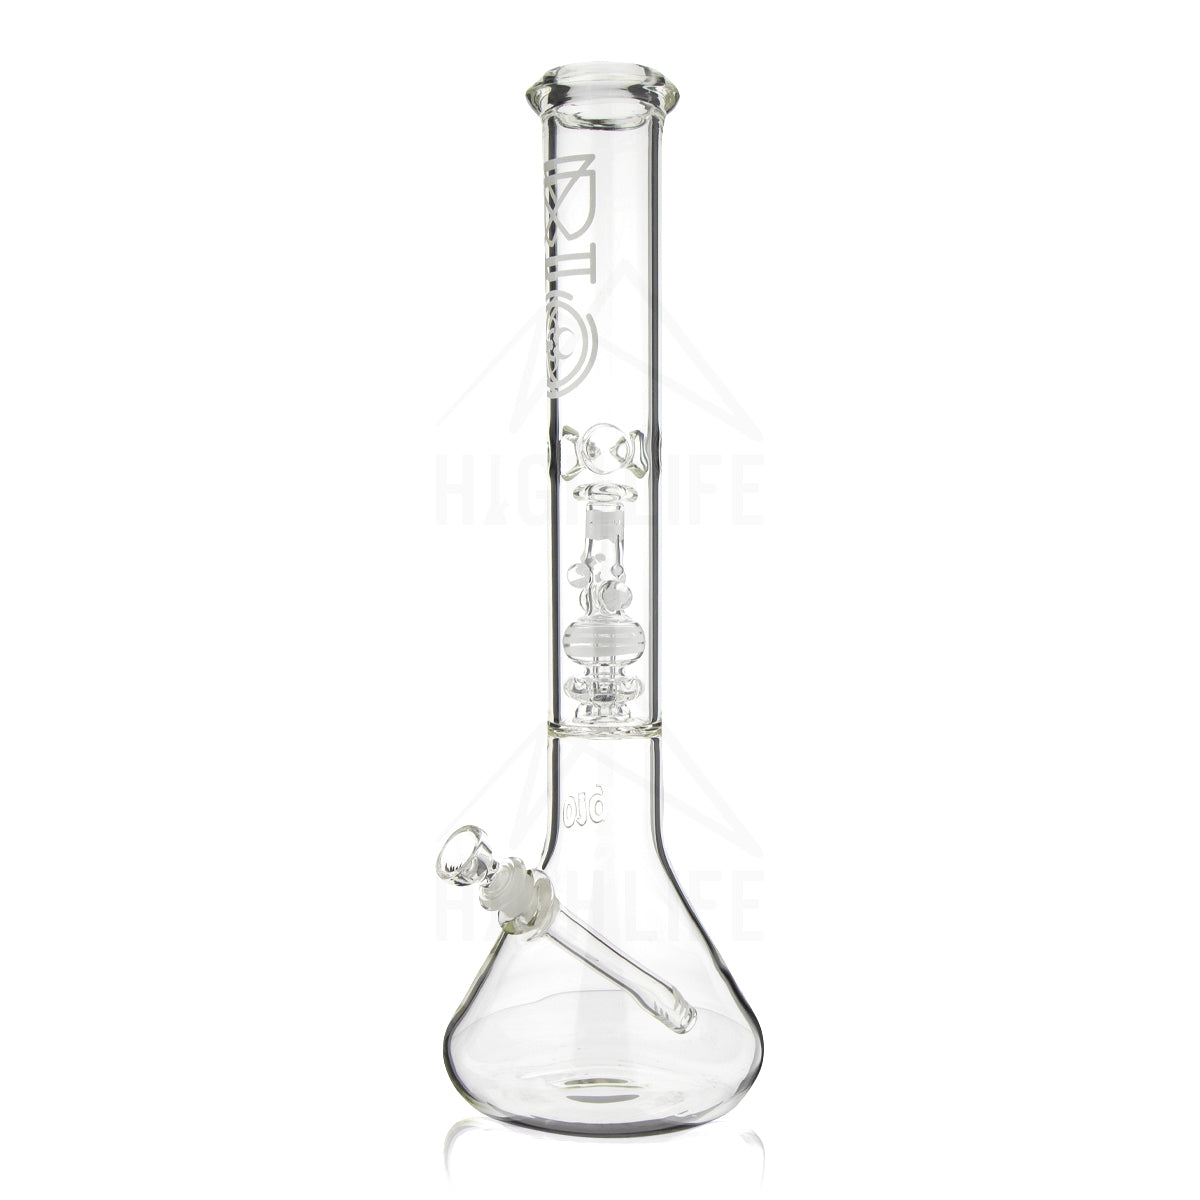 glass beaker bong